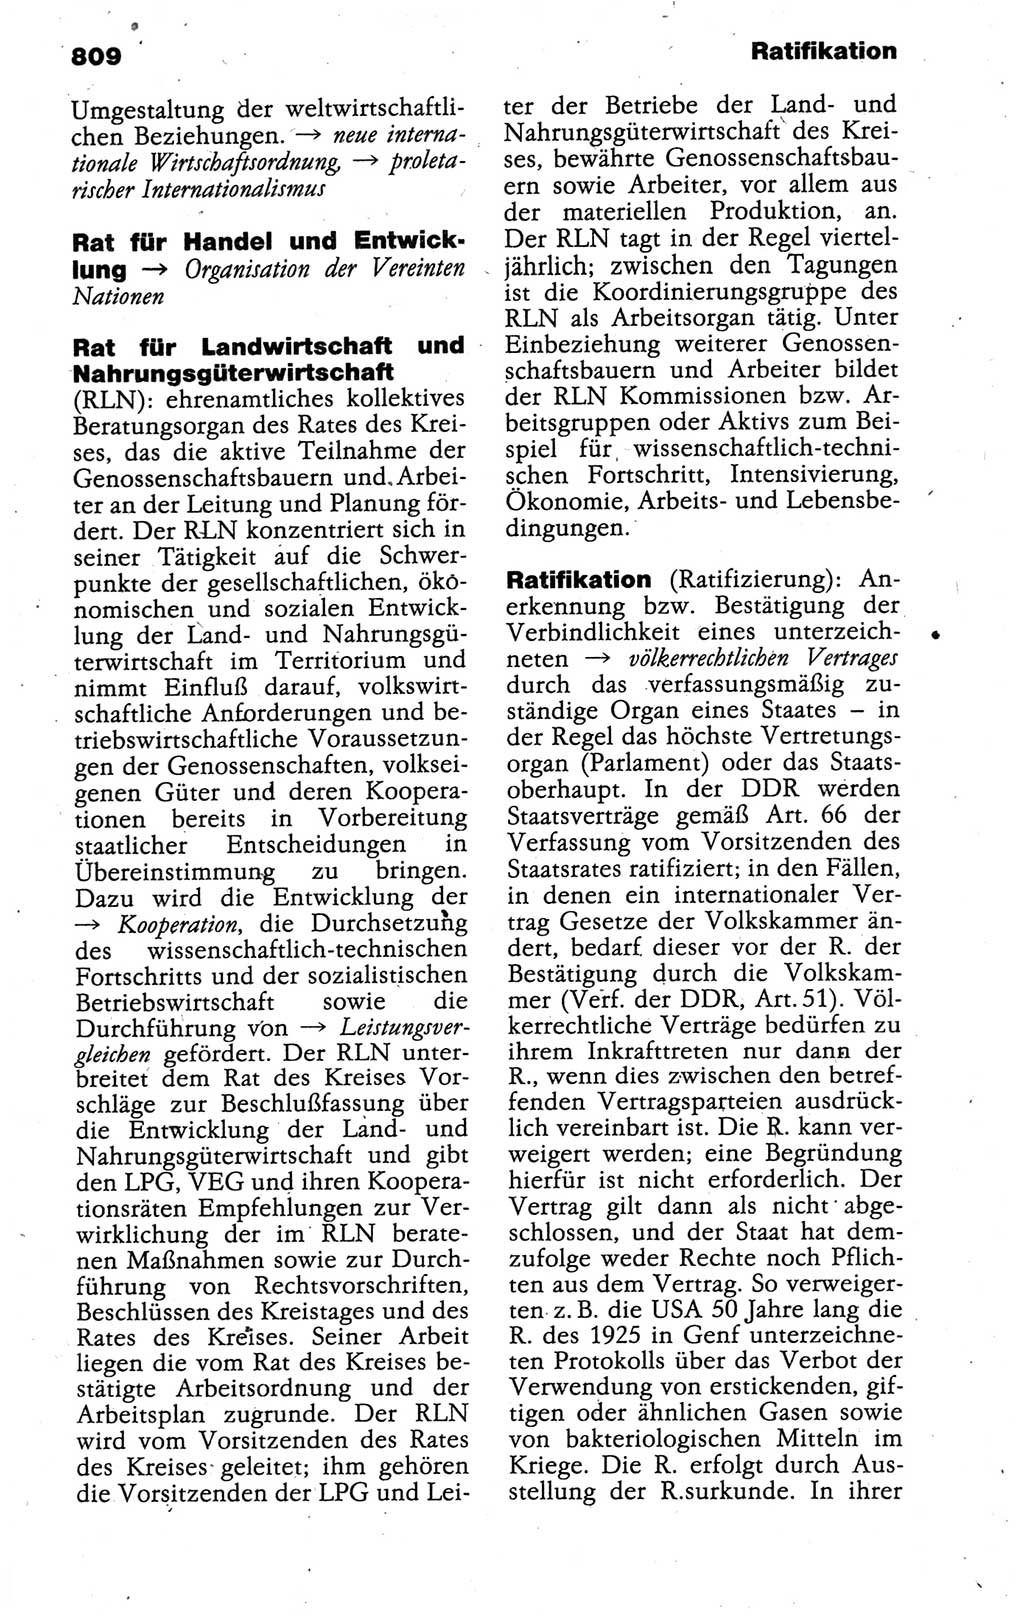 Kleines politisches Wörterbuch [Deutsche Demokratische Republik (DDR)] 1988, Seite 809 (Kl. pol. Wb. DDR 1988, S. 809)